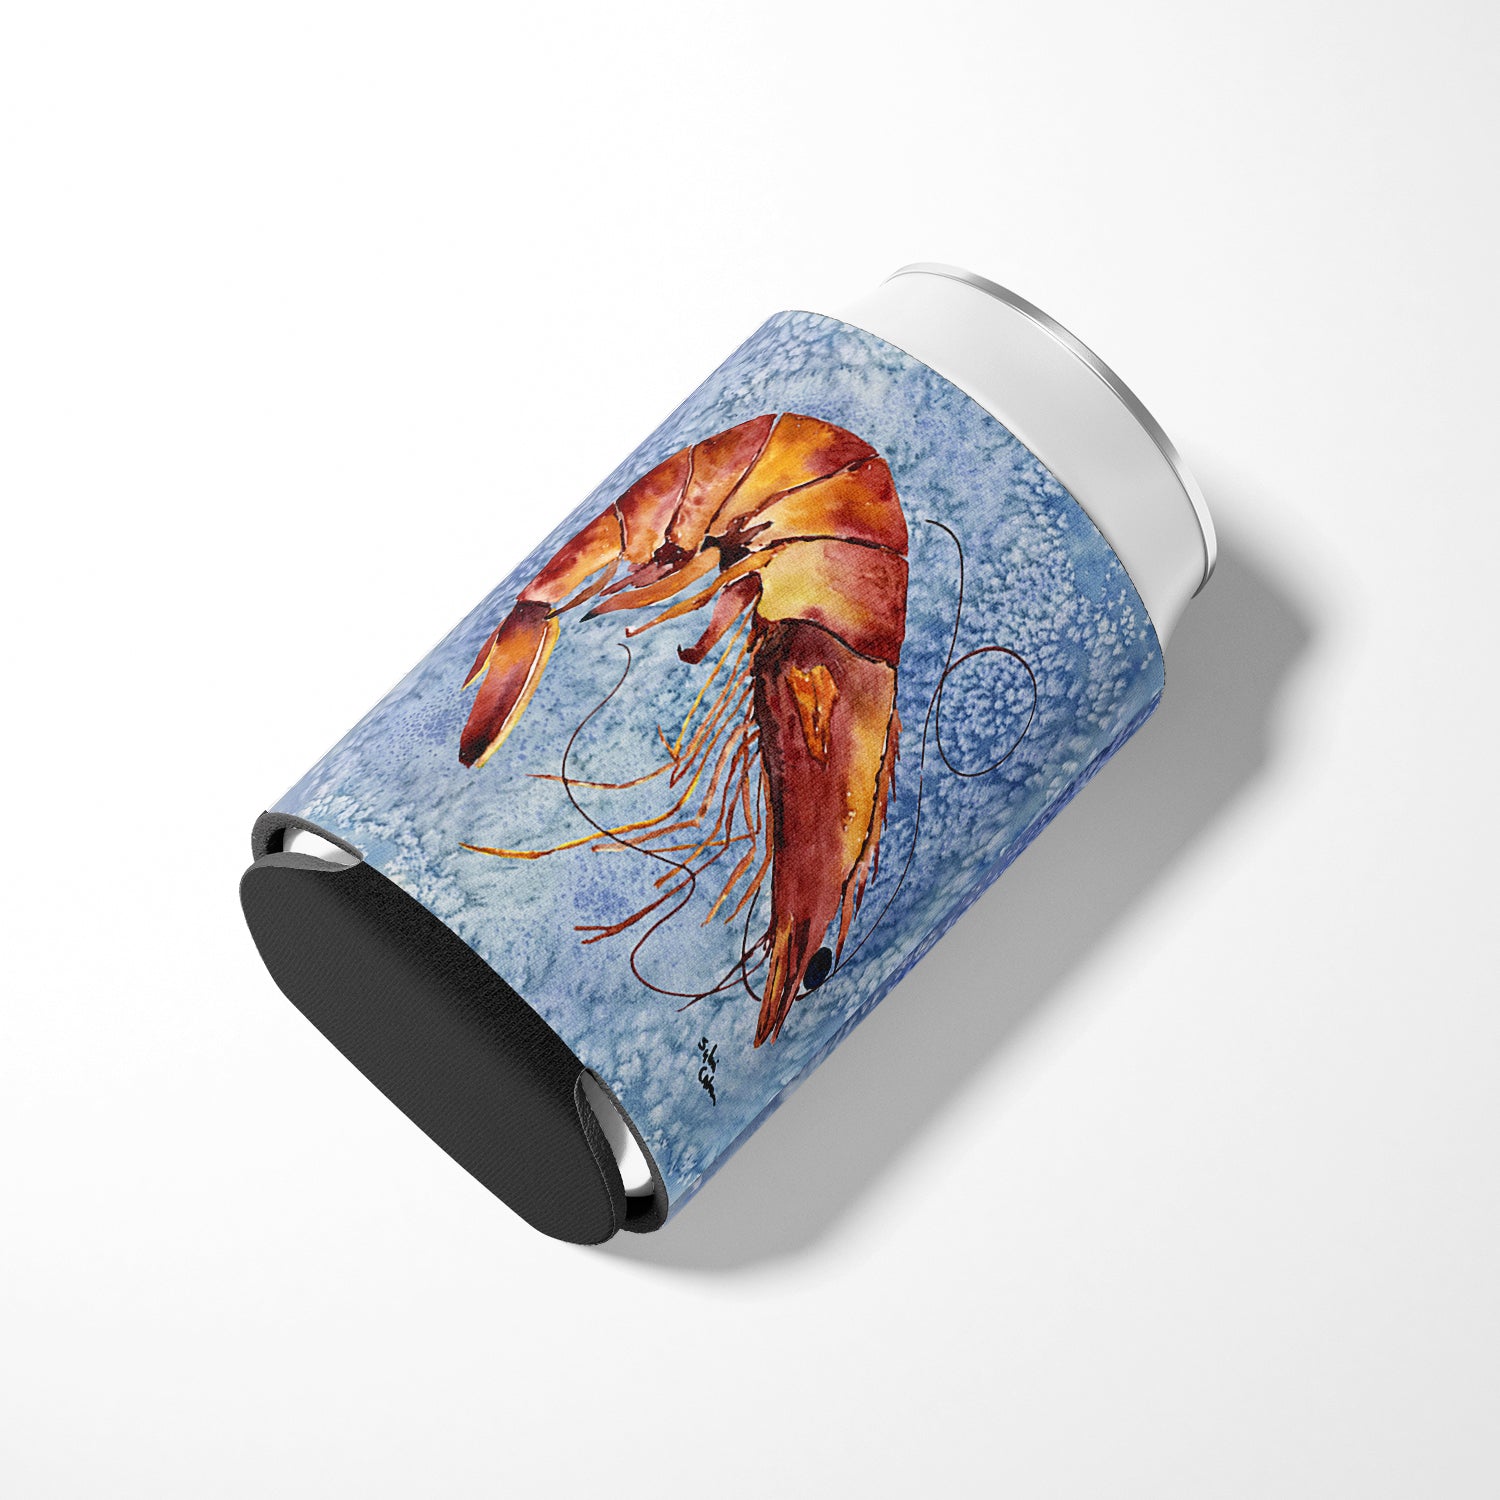 Shrimp Can or Bottle Beverage Insulator Hugger.